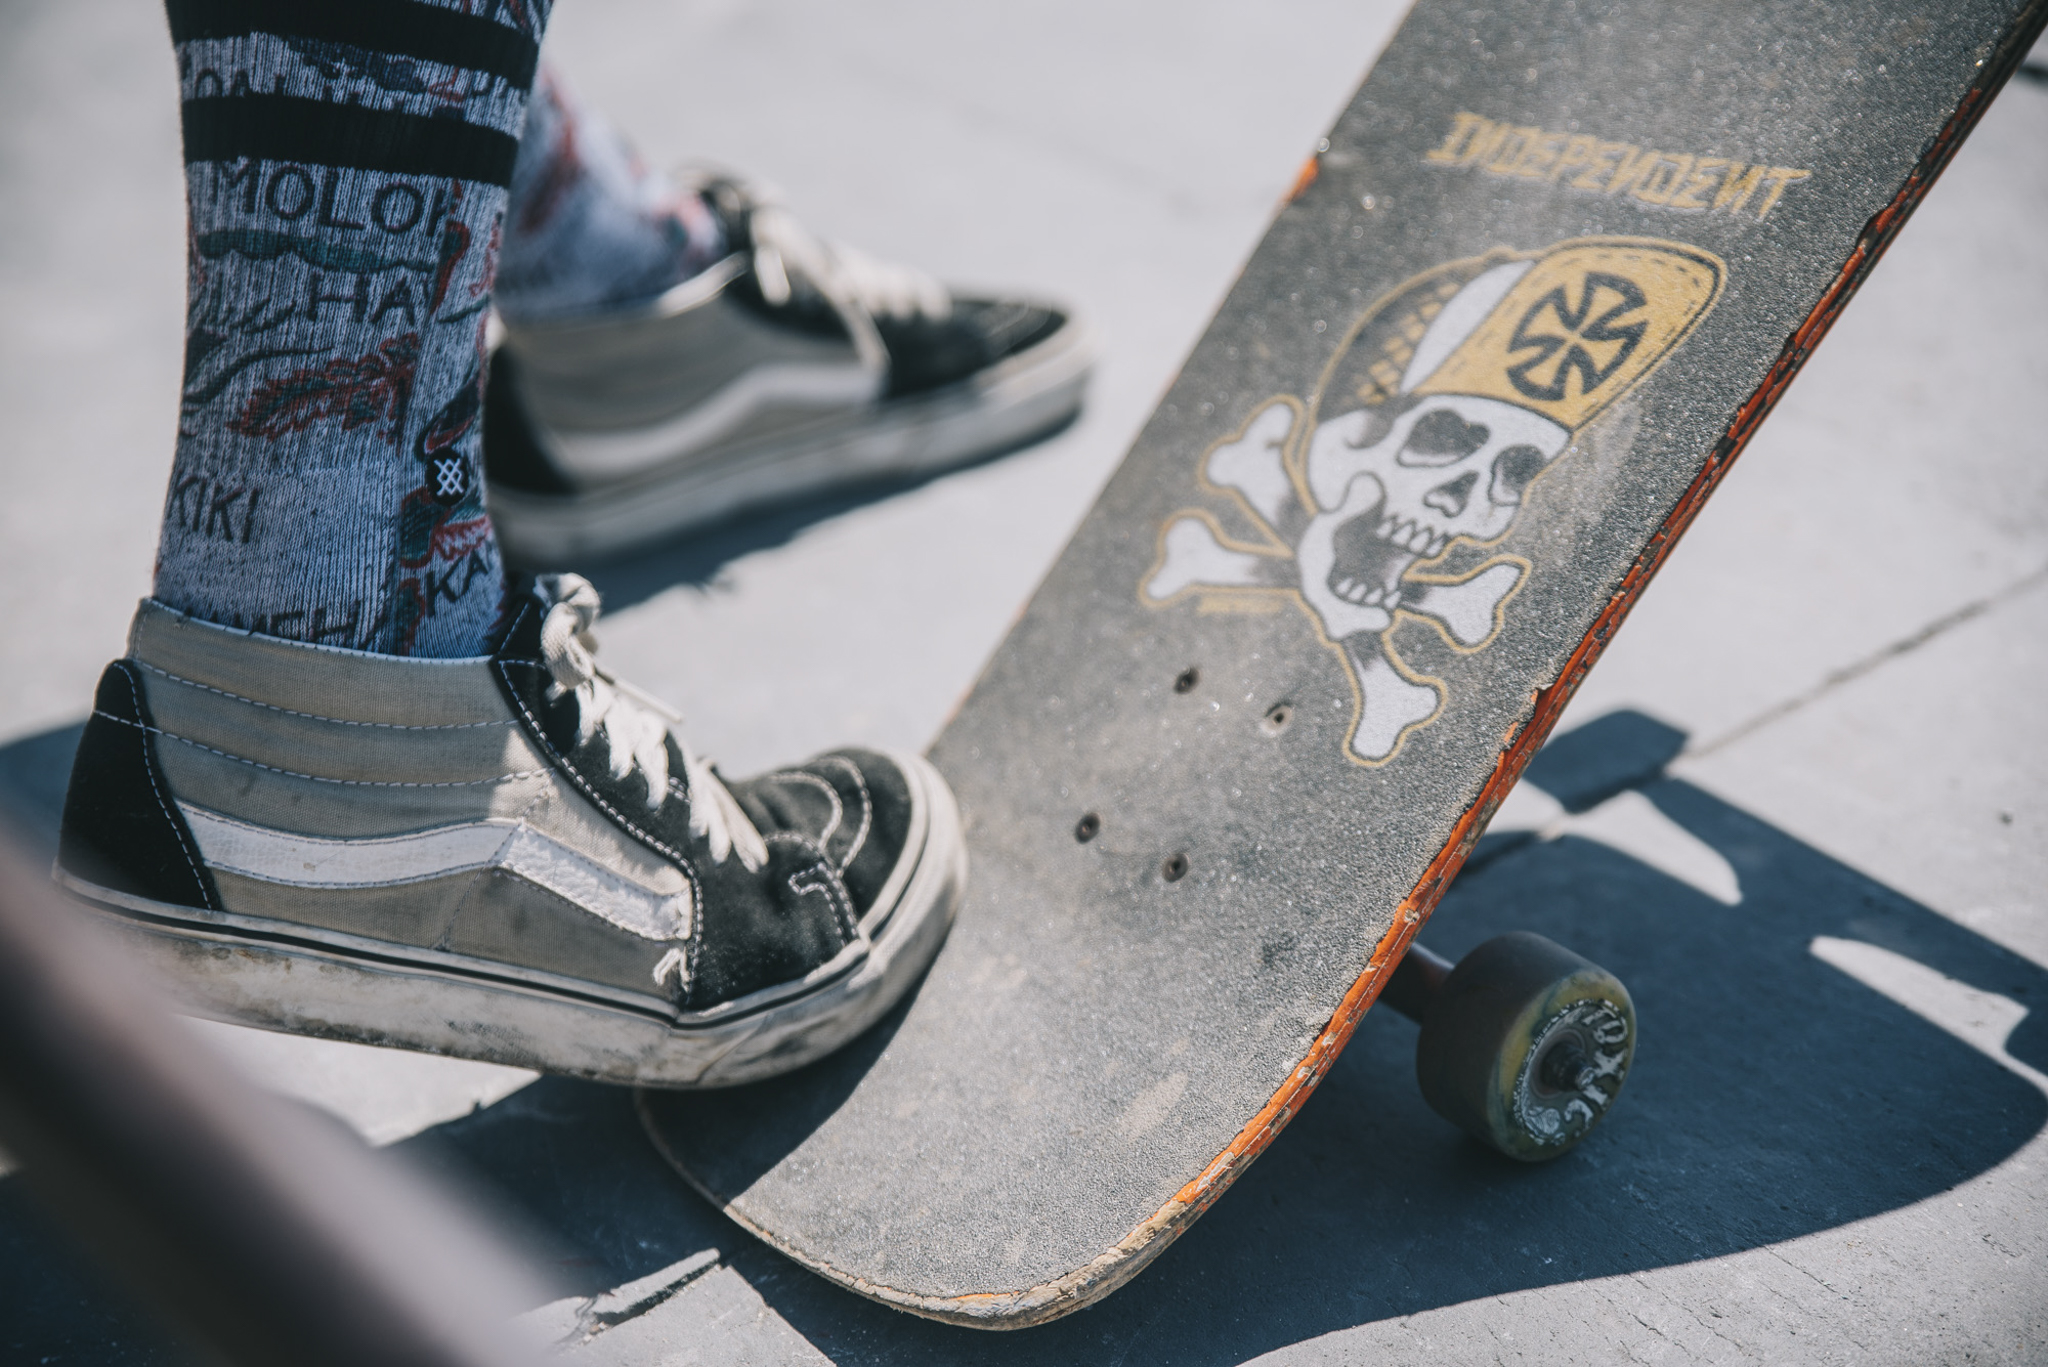 Redbull bowl rippers skateboard focus